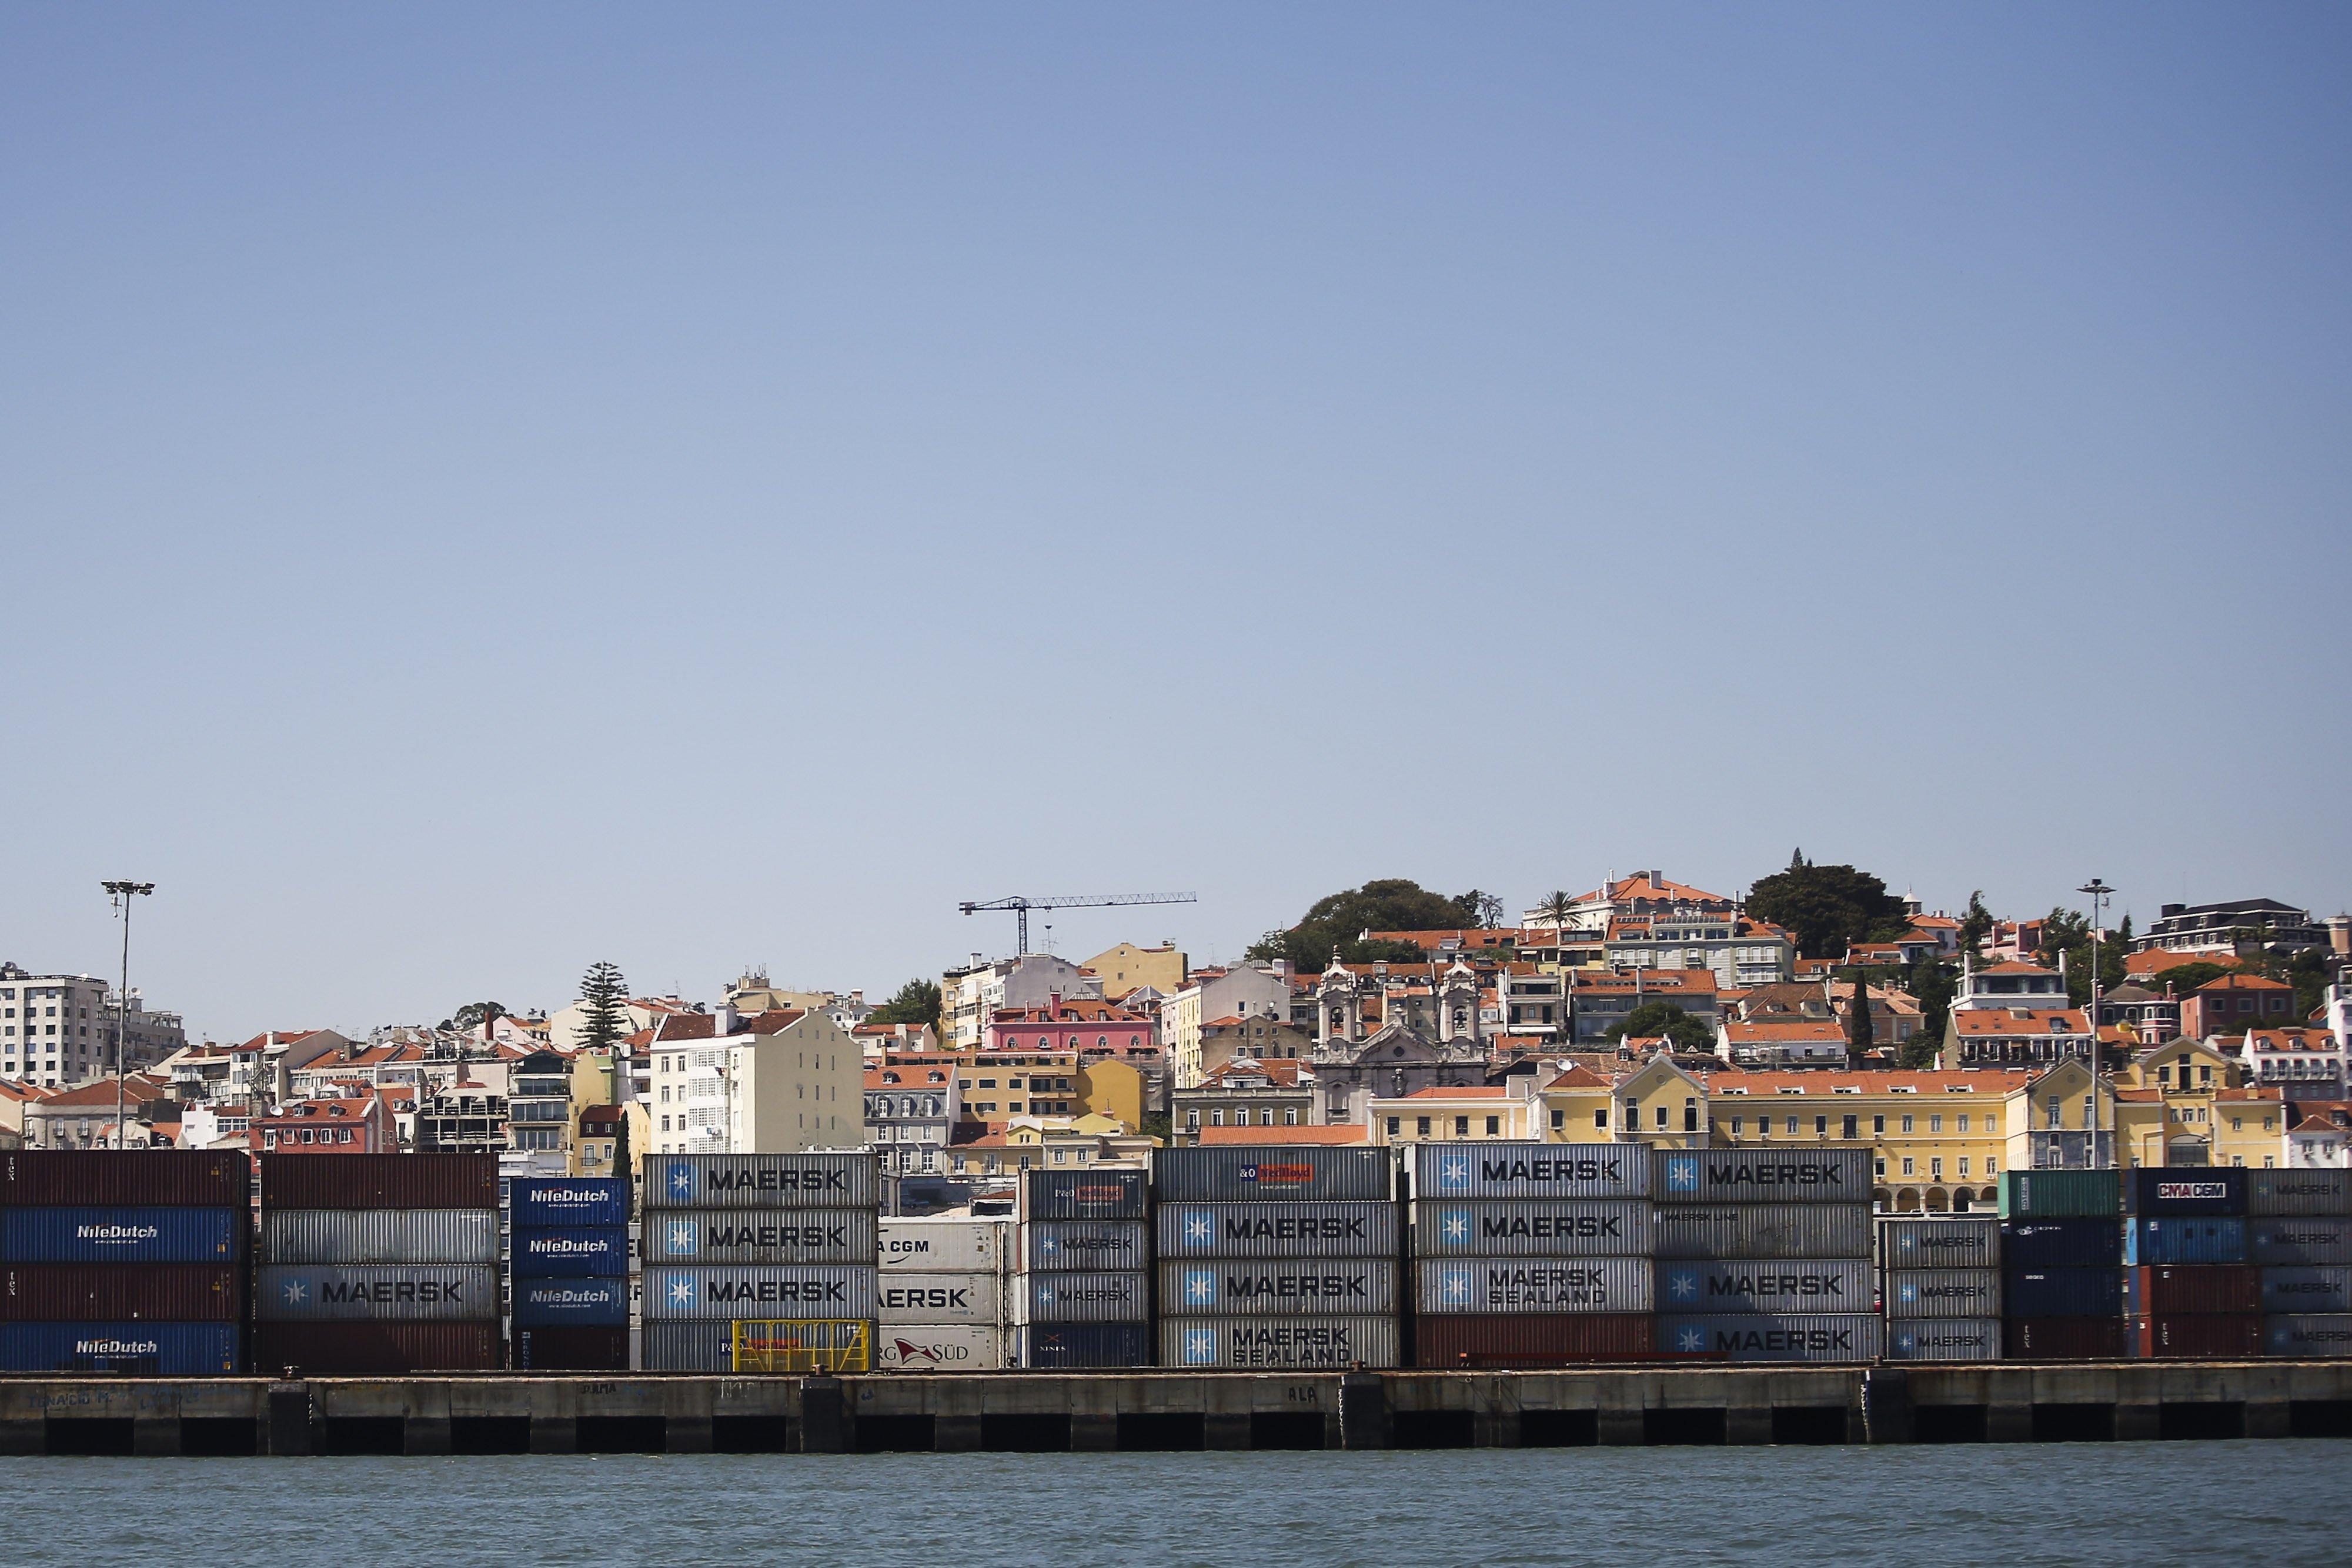 Carga nos portos do continente cai 8% até fevereiro interrompendo crescimentos desde 2012